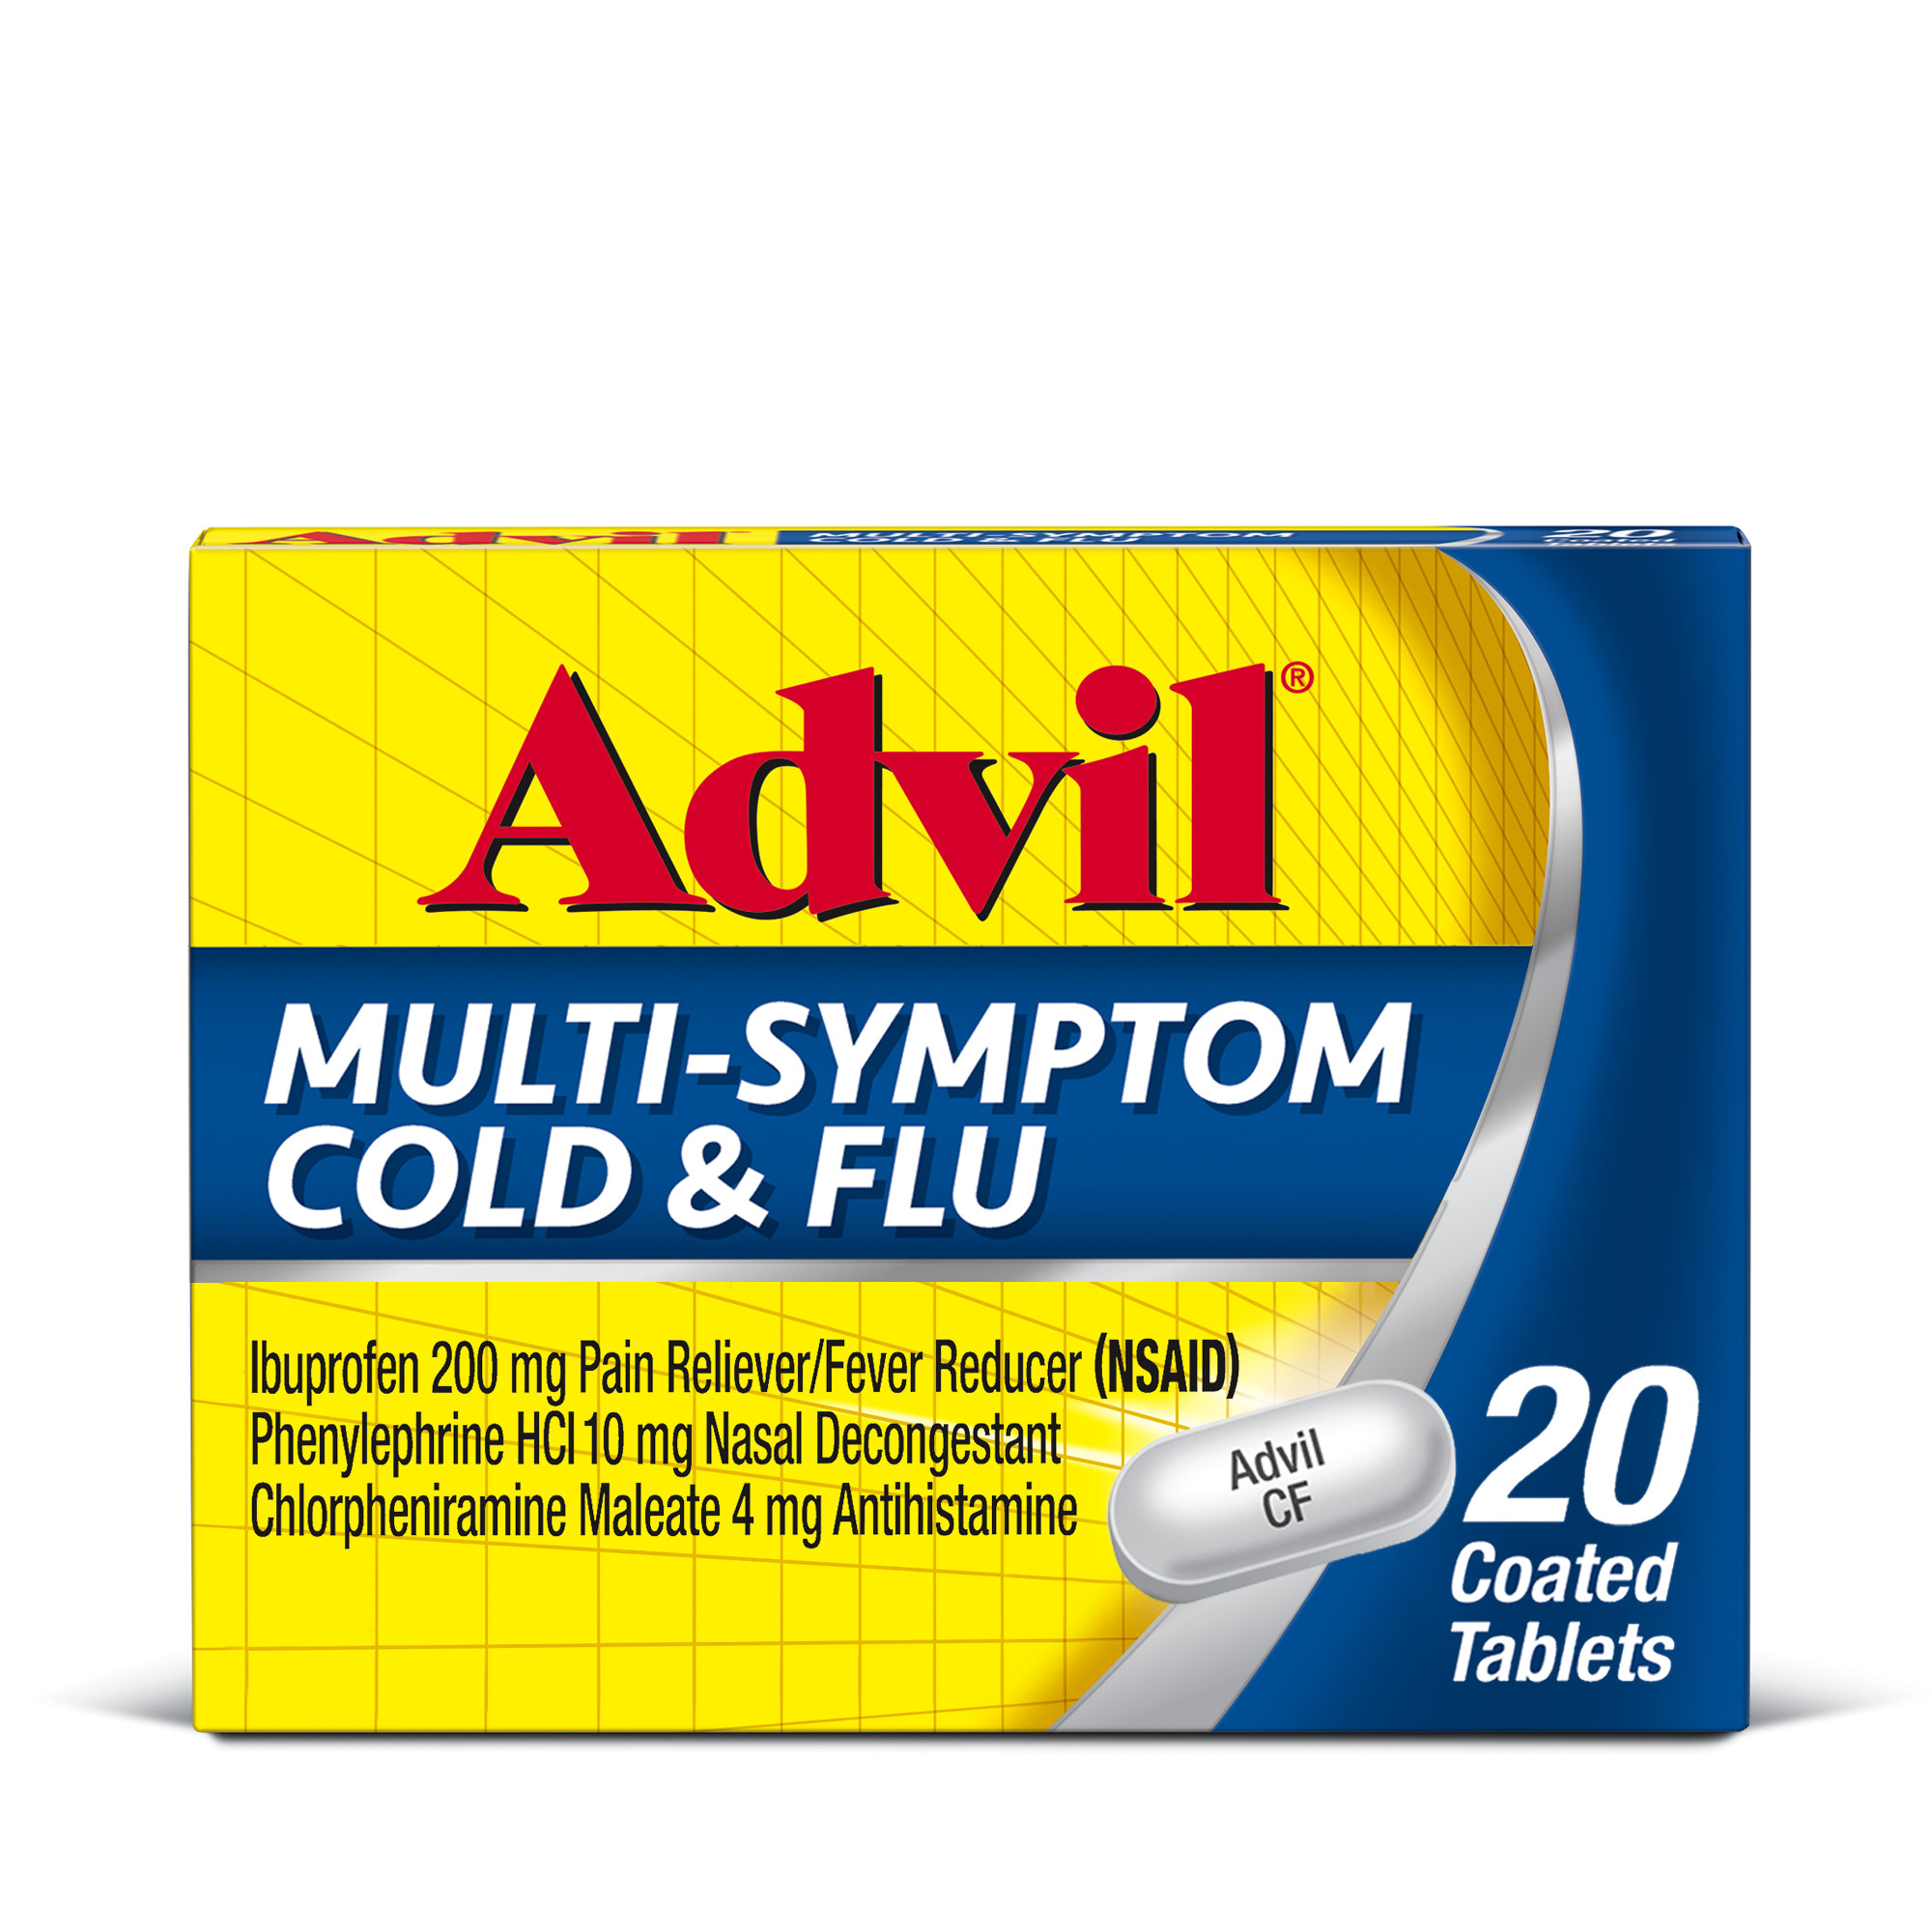 Advil Multi-Symptom Cold and Flu Medicine Fever Reducer Coated Tablets, 20 Count - image 1 of 11